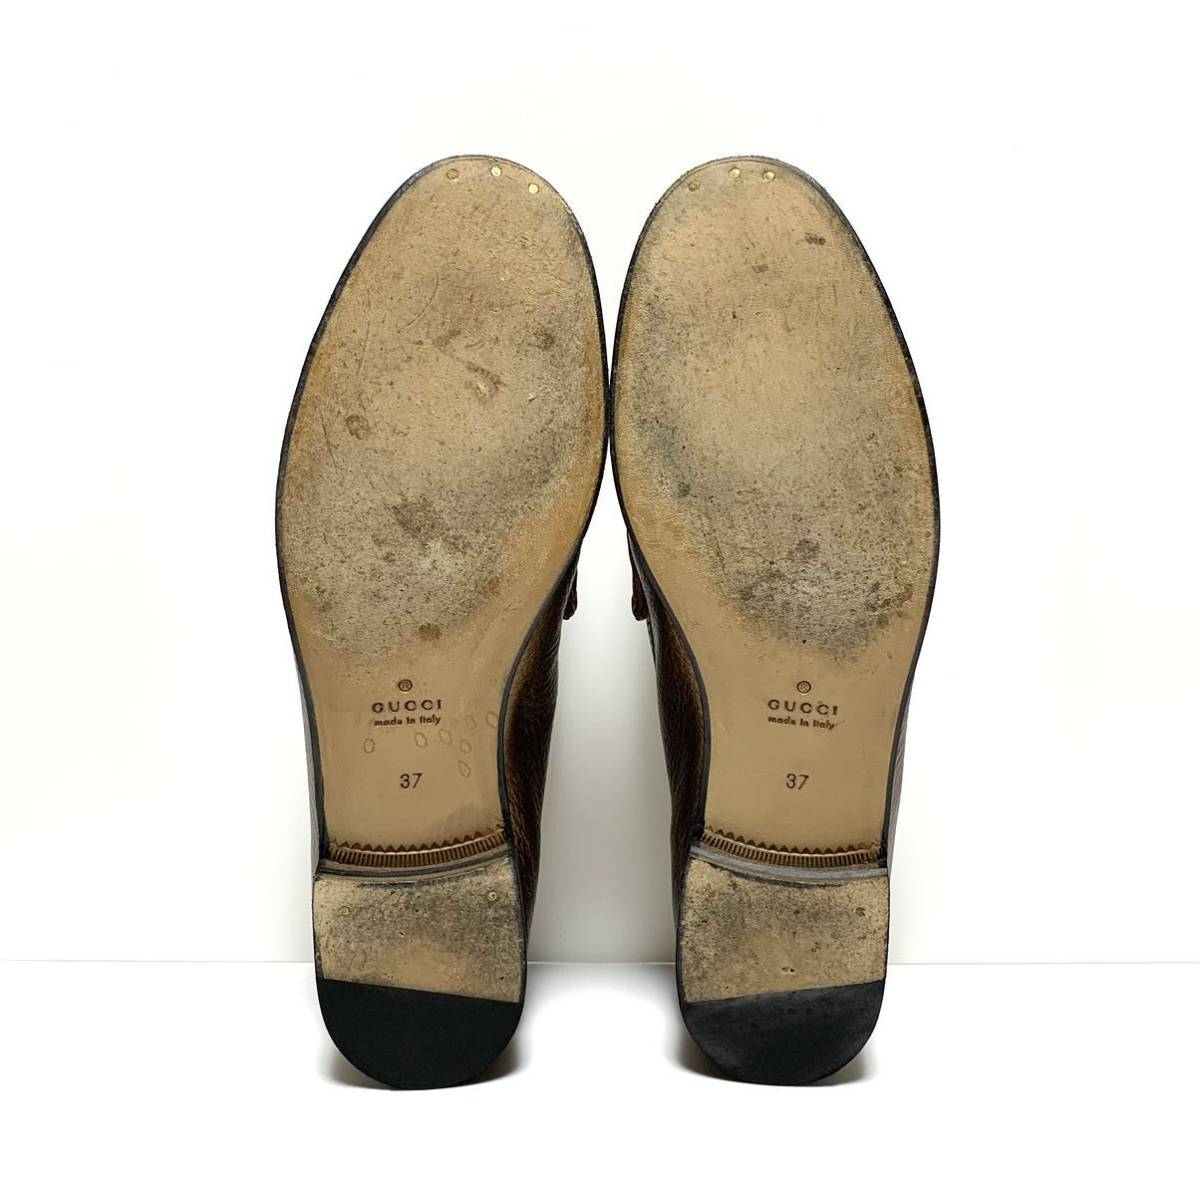 良品 グッチ GUCCI 1953コレクション シボ革 ホースビット ローファー シューズ size 37 イタリア製 モカシン スリッポン 革靴 5